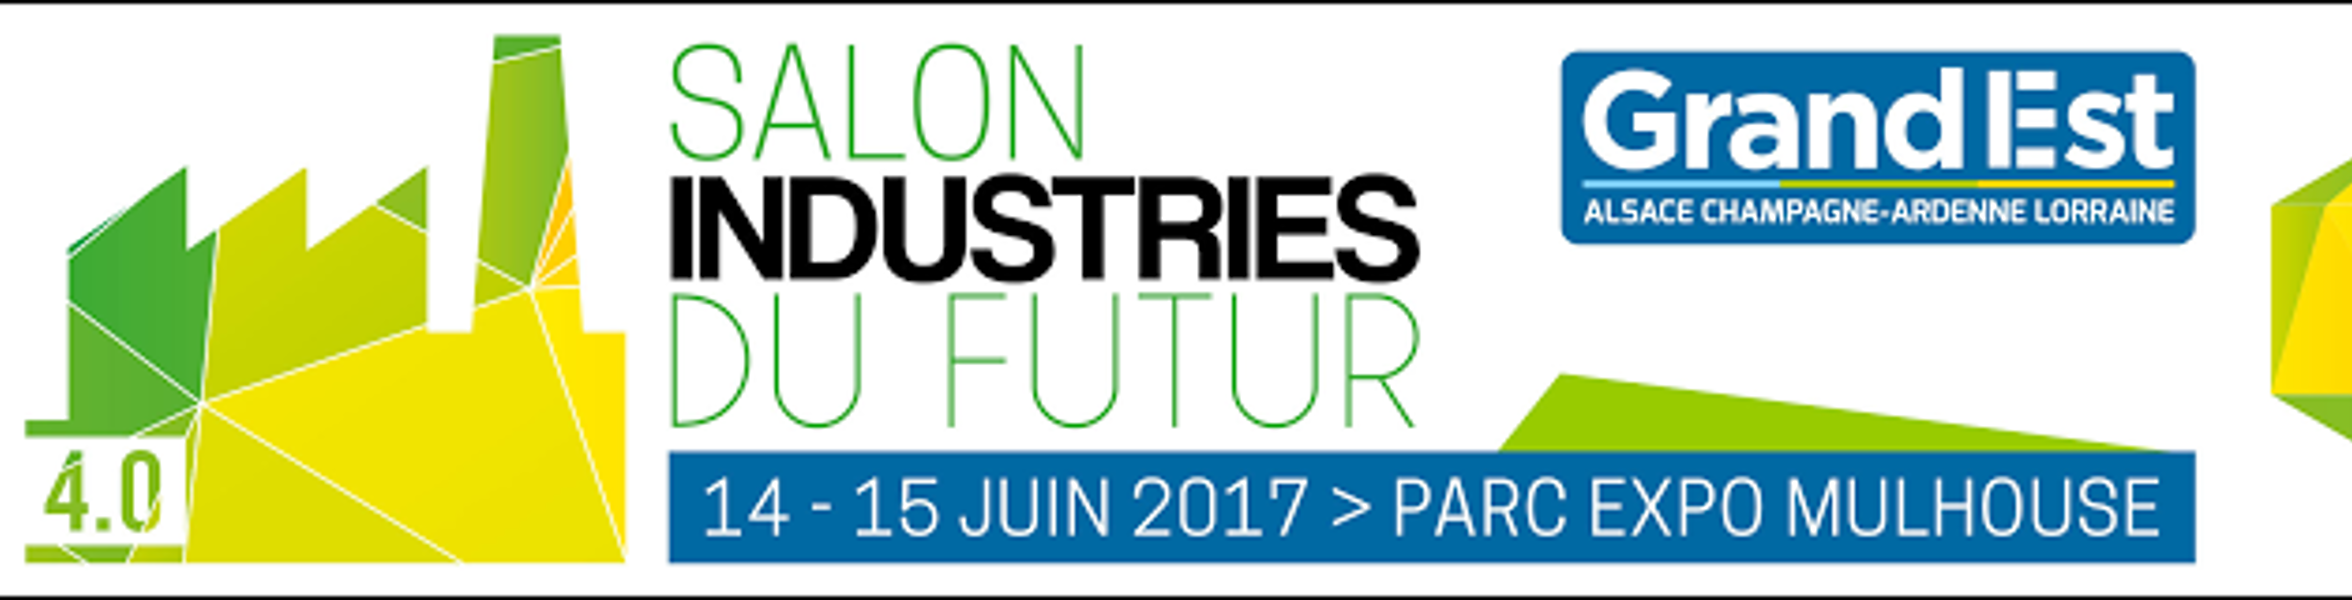 Salon des industries du futur -14/15 Juin 2017 Mulhouse